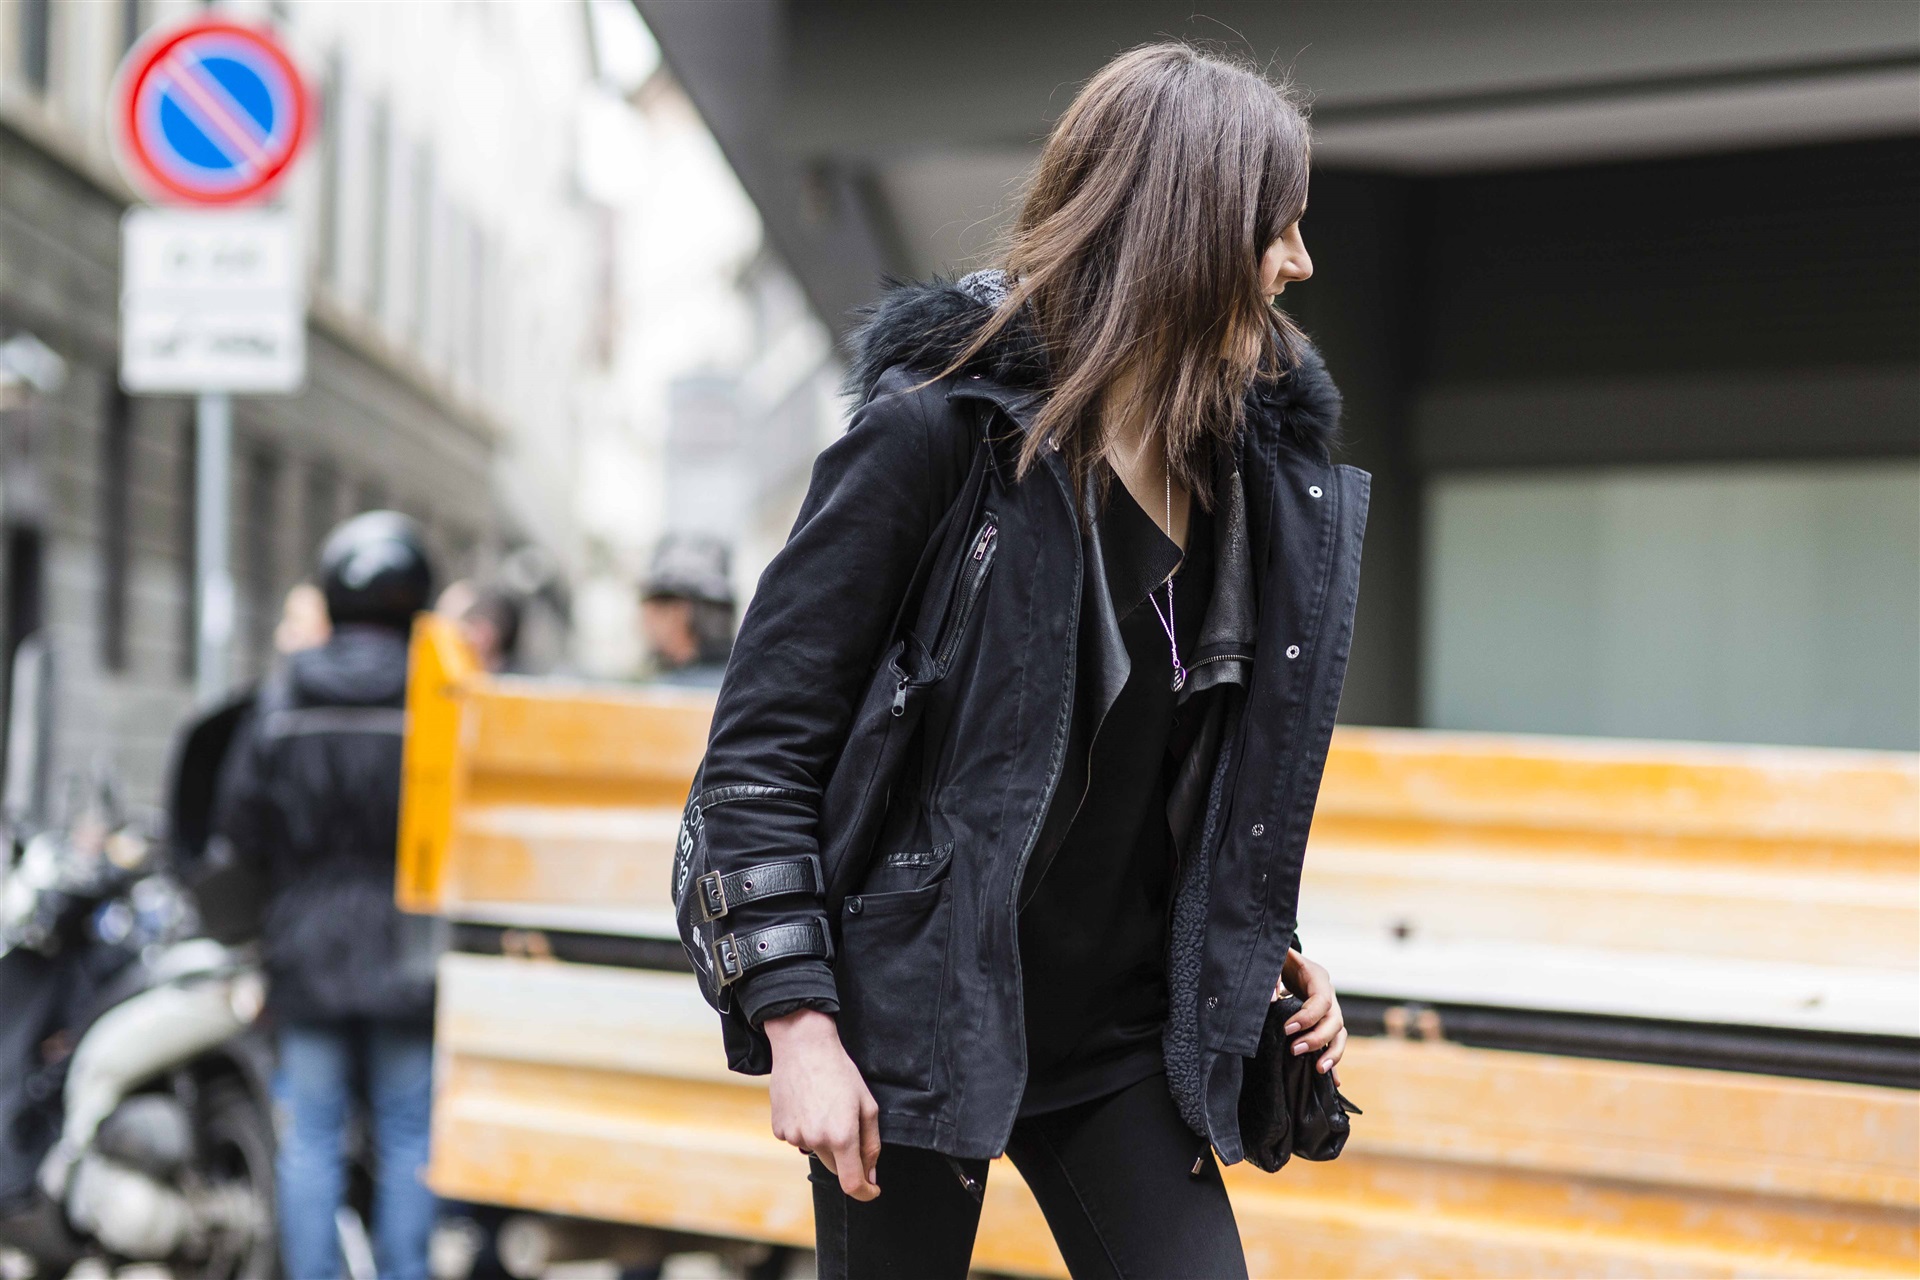 2014-2015 Sonbahar/Kış Milano Moda Haftası Sokak Stili